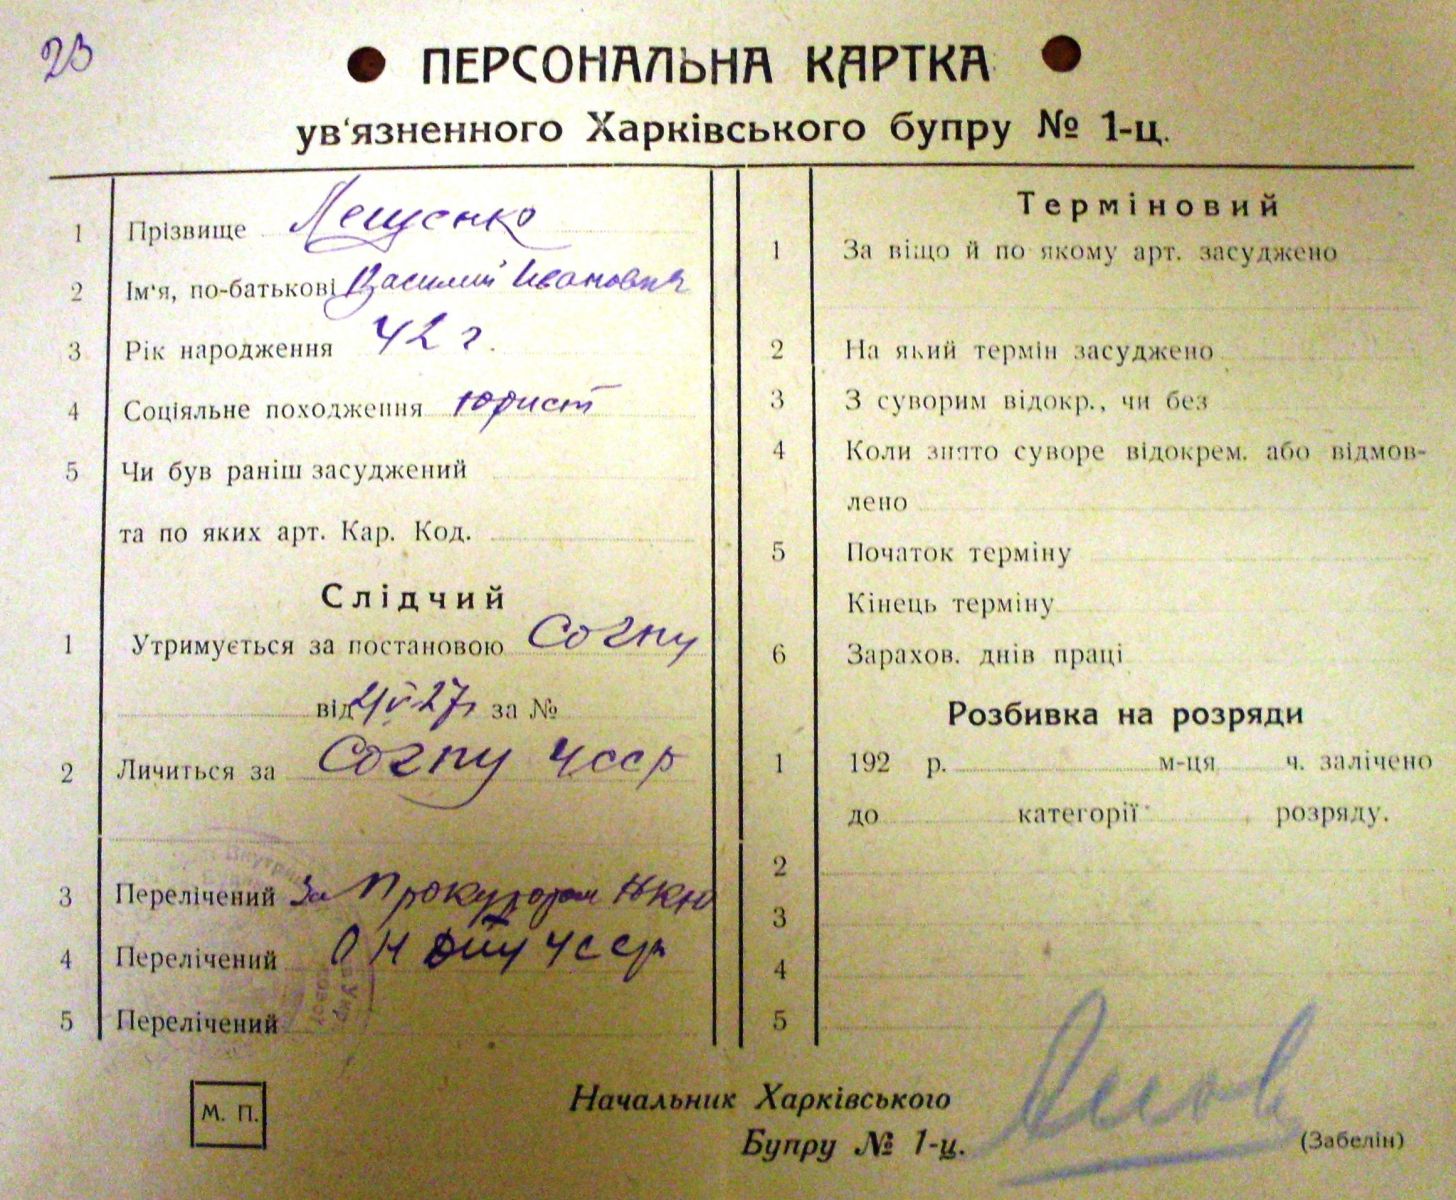 Персональна картка в’язня Харківського БУПРу 1927 року